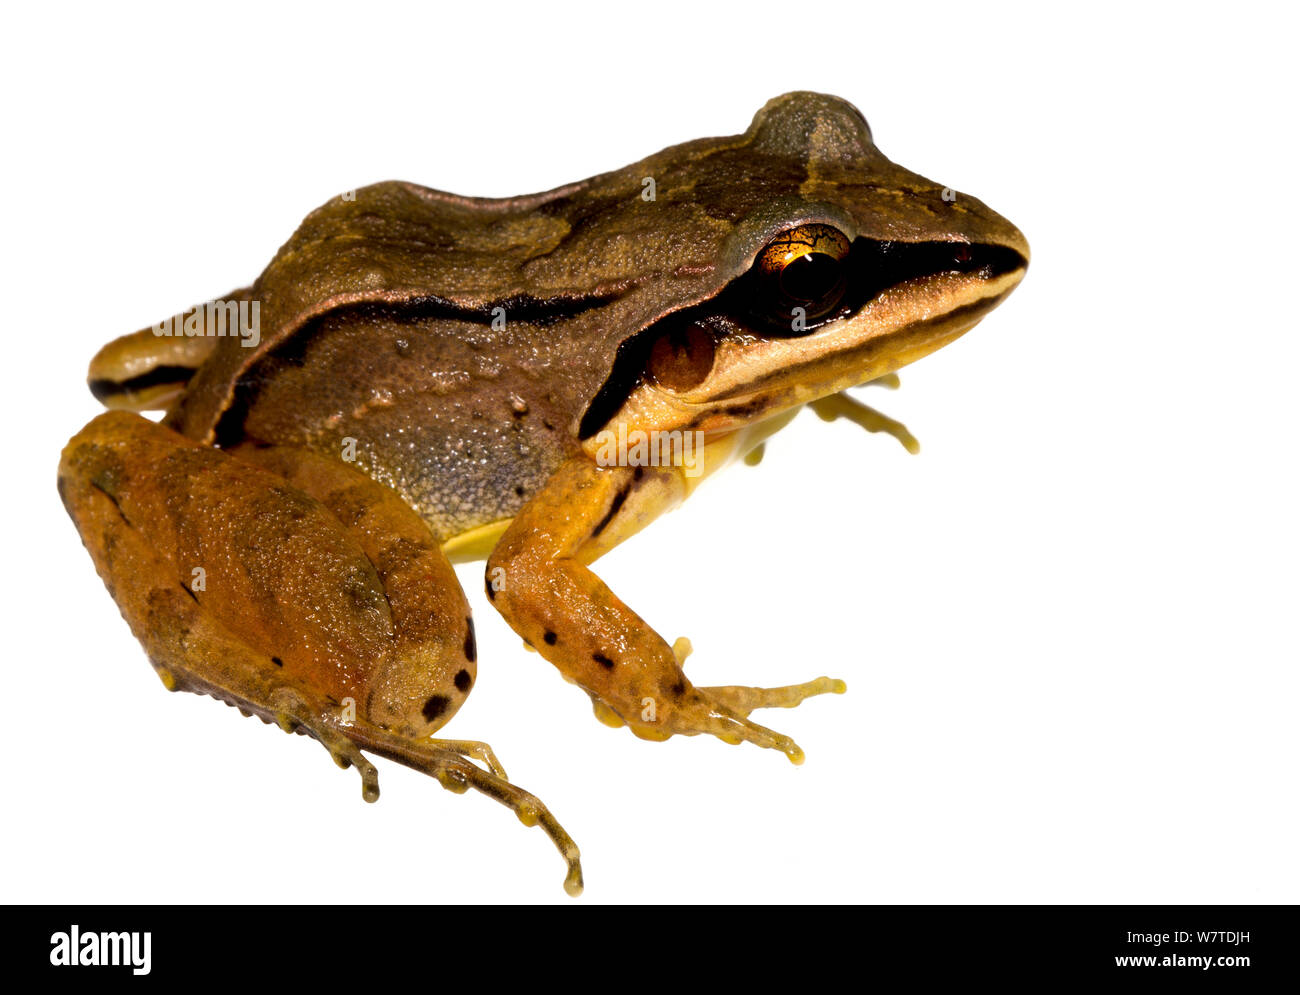 Leptodactylus mystaceus fossé (grenouille) la montagne de Kaw, Guyane française. Projet d'Meetyourneighbors.net Banque D'Images